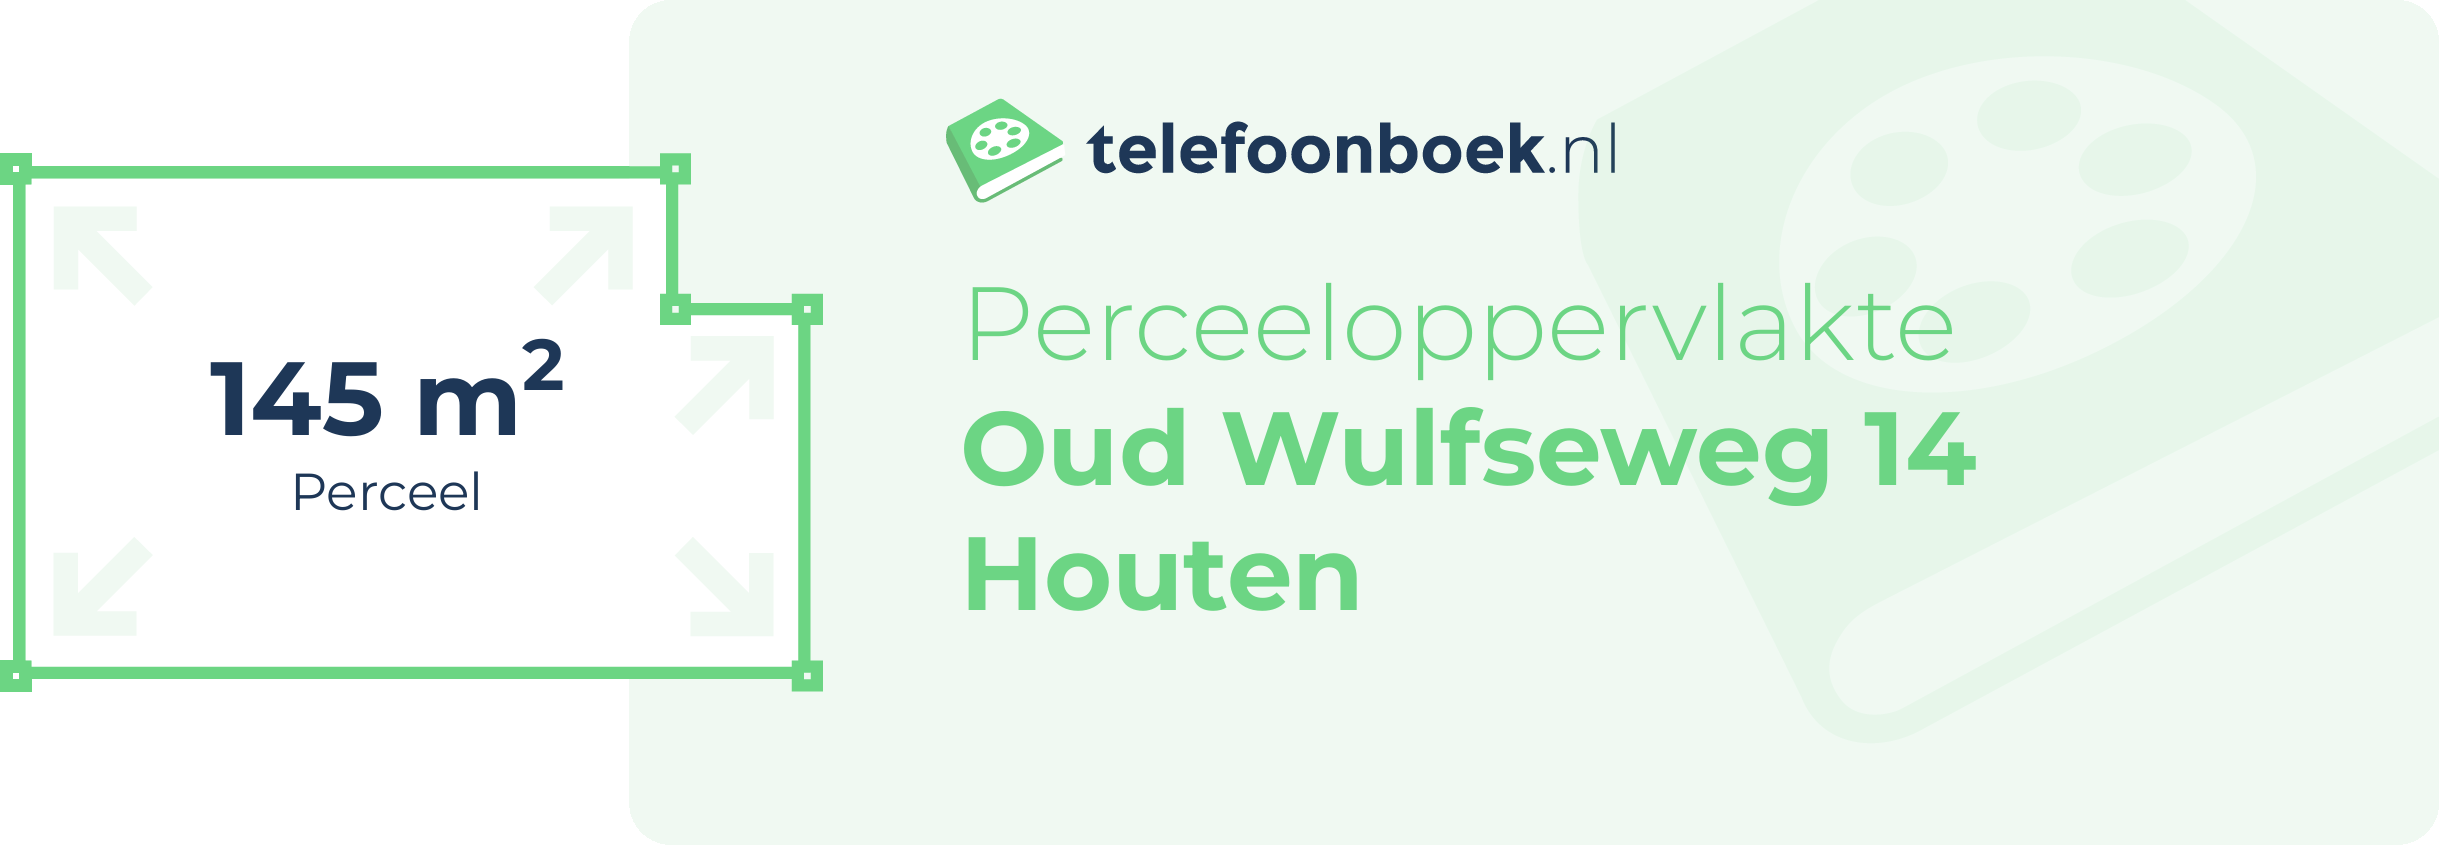 Perceeloppervlakte Oud Wulfseweg 14 Houten